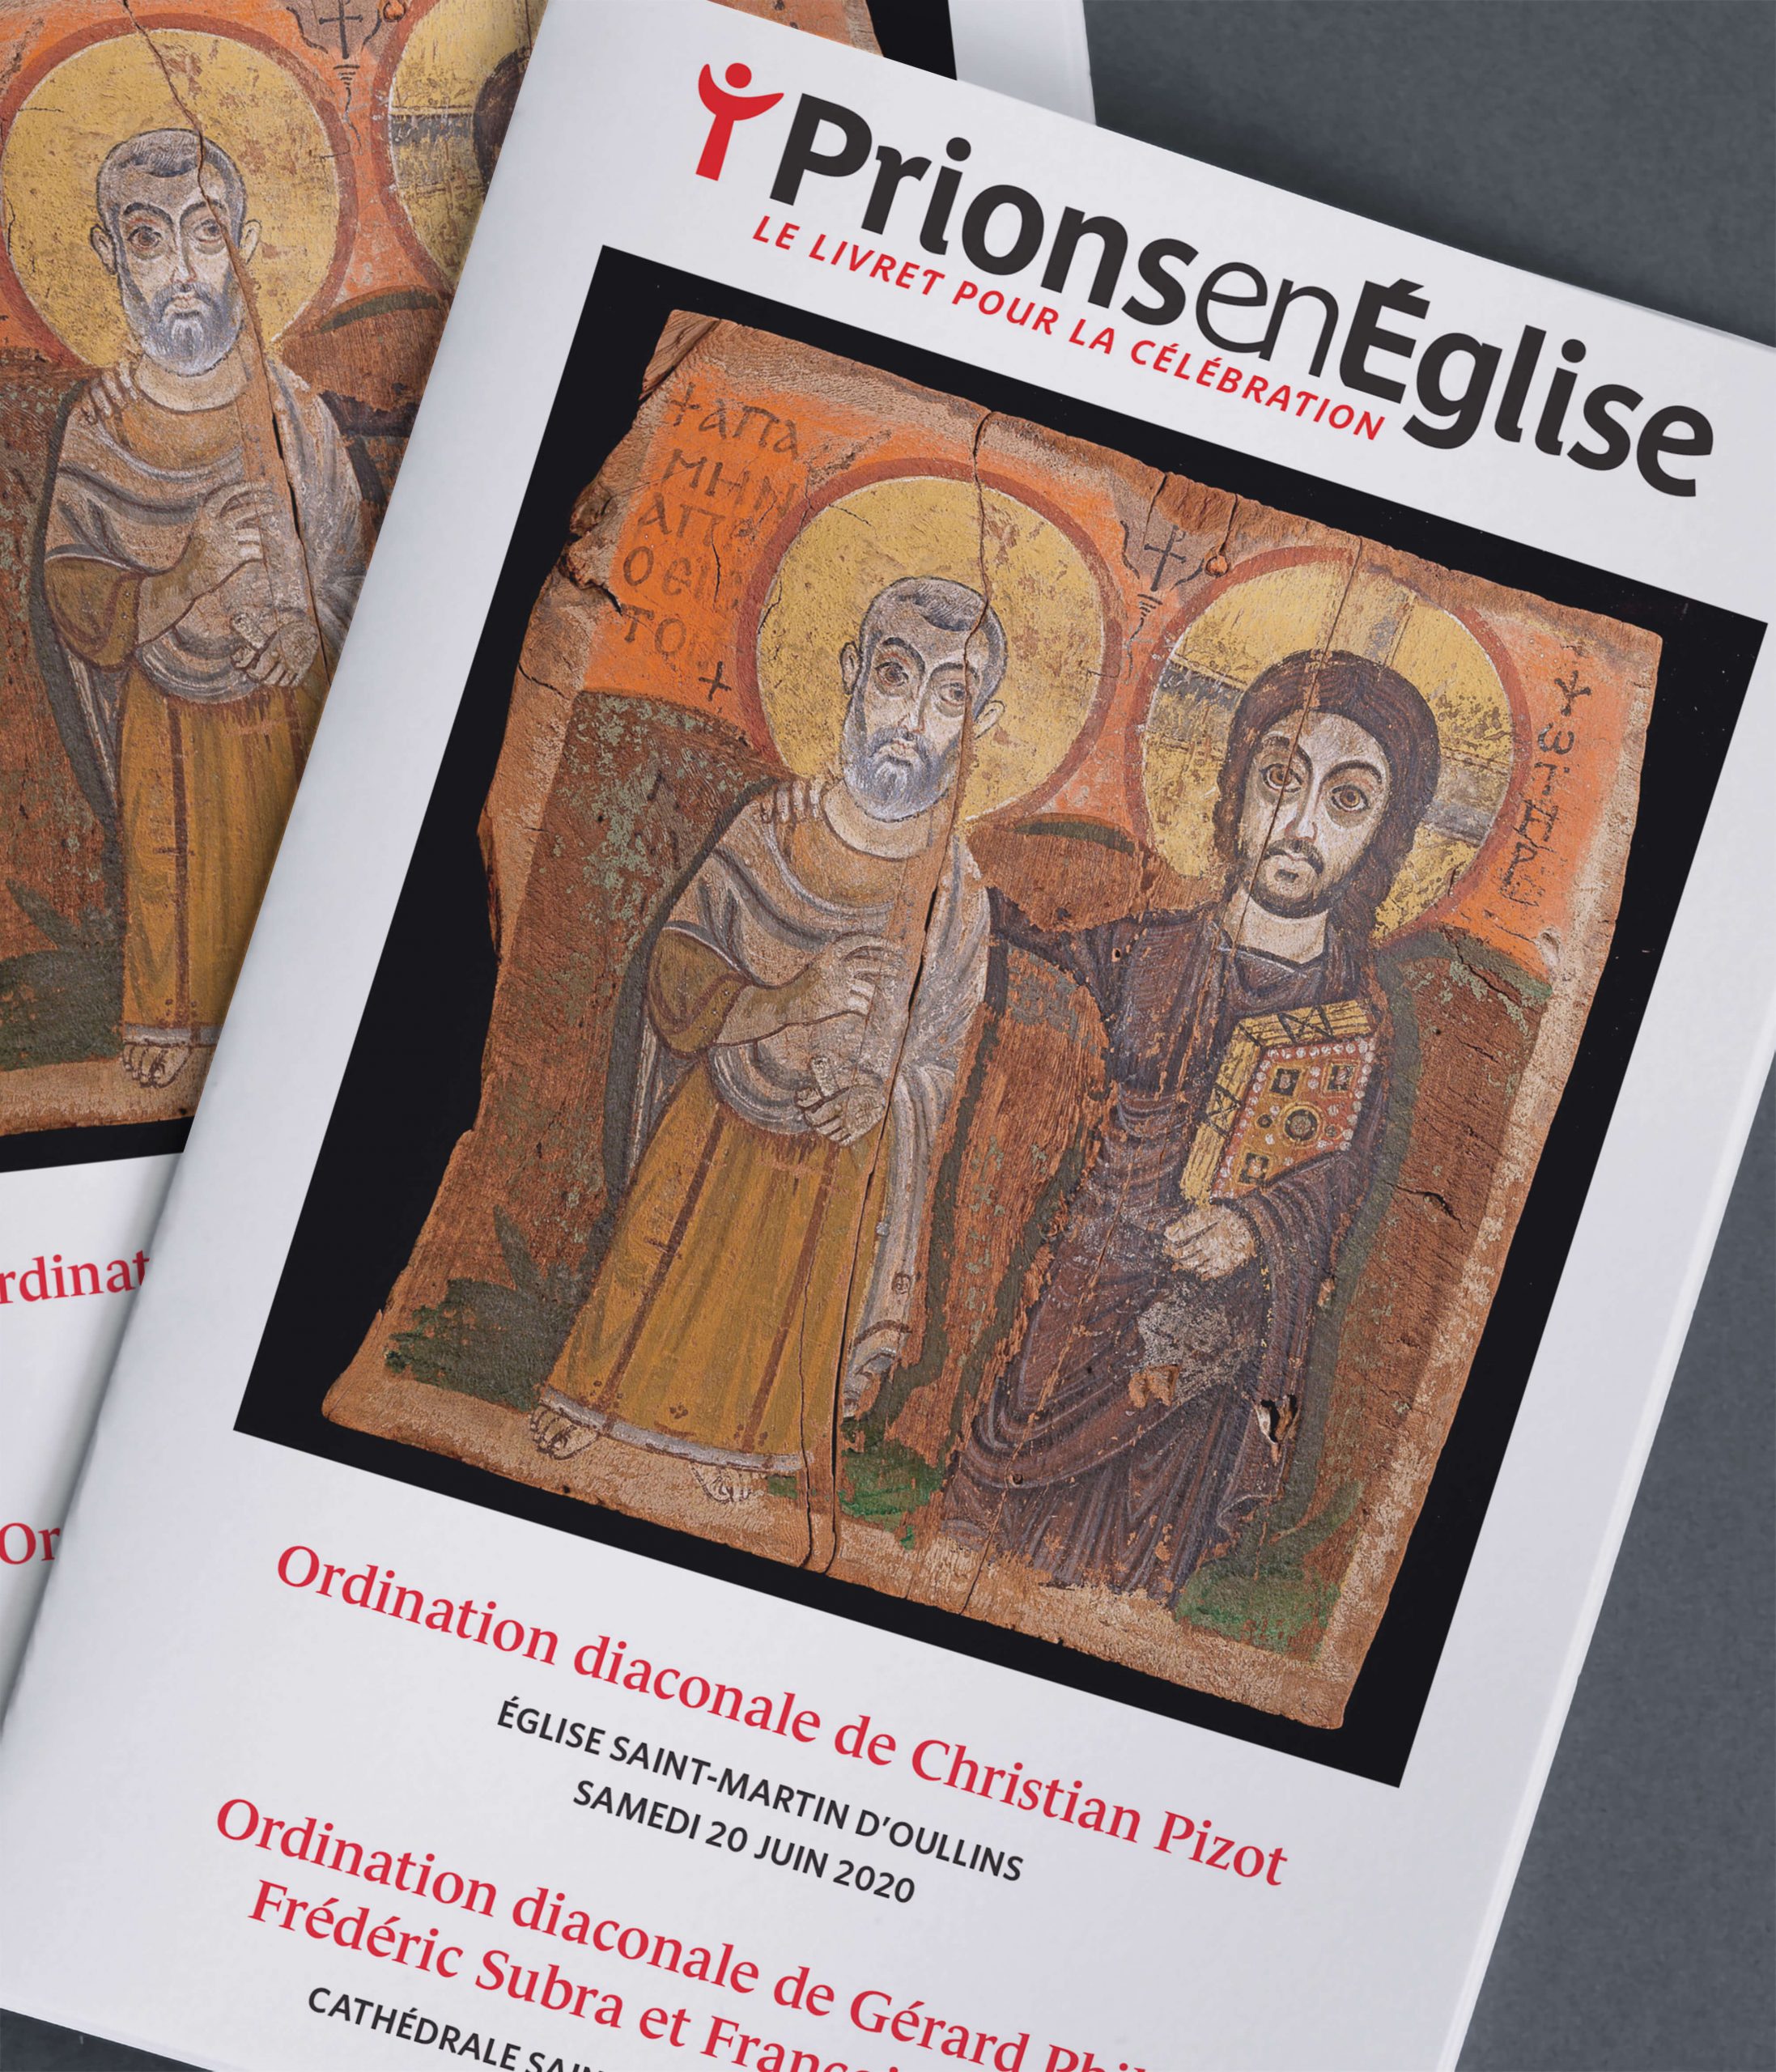 Ordinations diaconales de Christian Pizot, Gérard Philis, Frédéric Subra et François Verdier